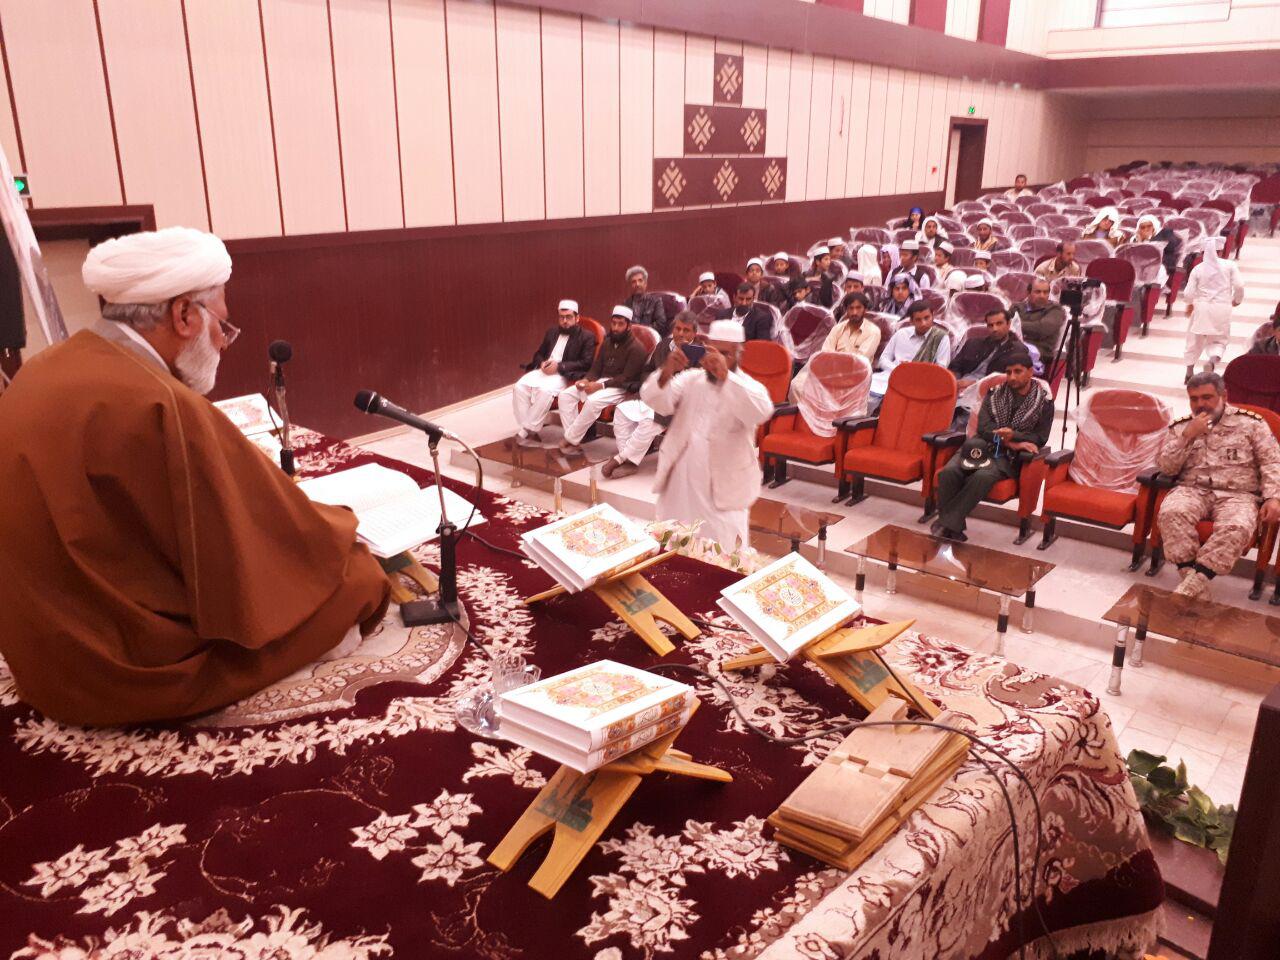 برگزاری کرسی بزرگ تلاوت قرآن در شهرستان خاش از نگاه لنز دوربین